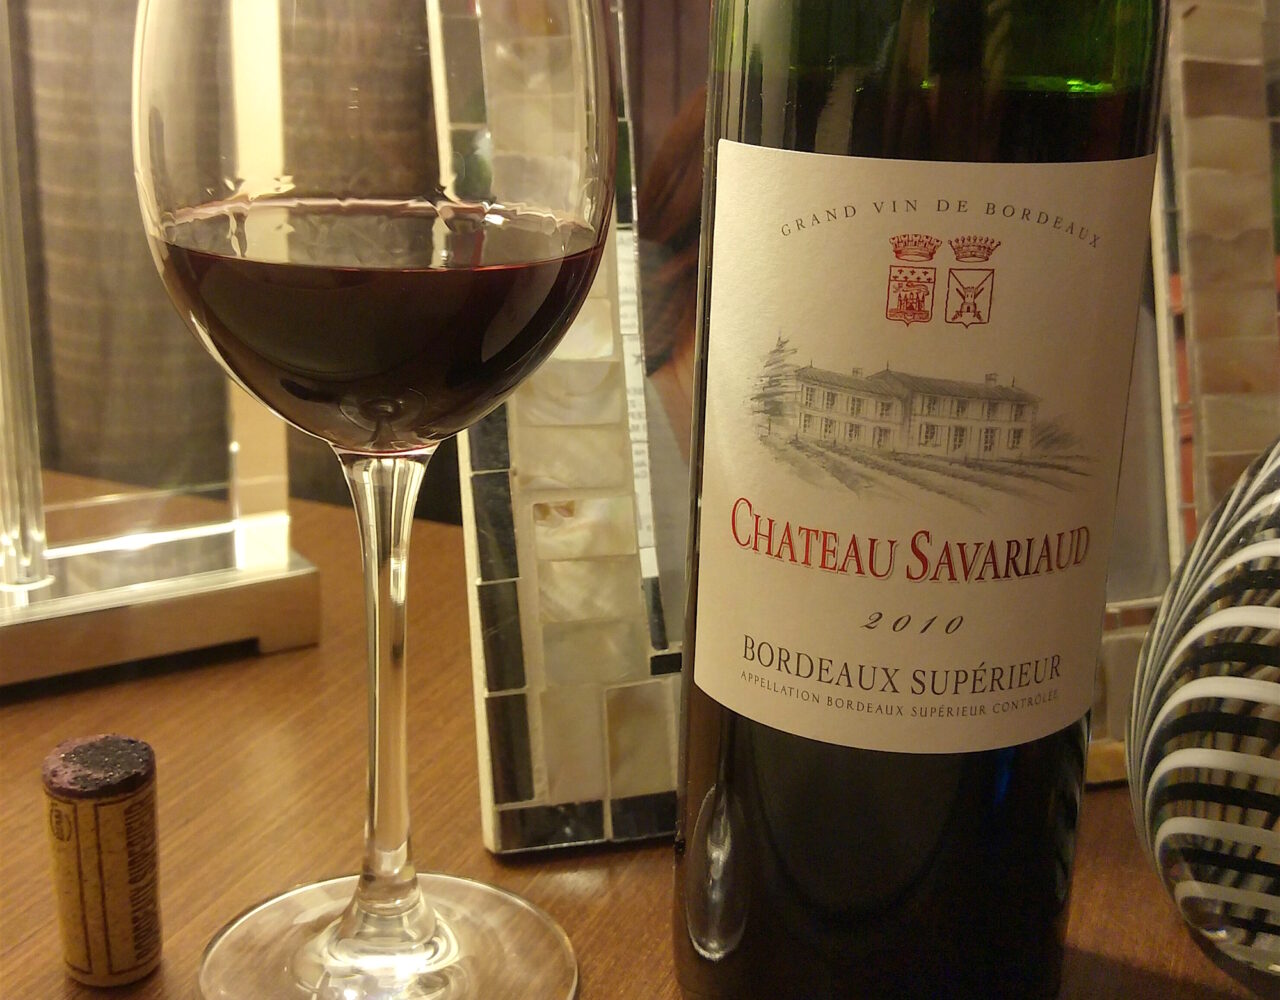 Château Savariaud Bordeaux Superieur 2010: Review